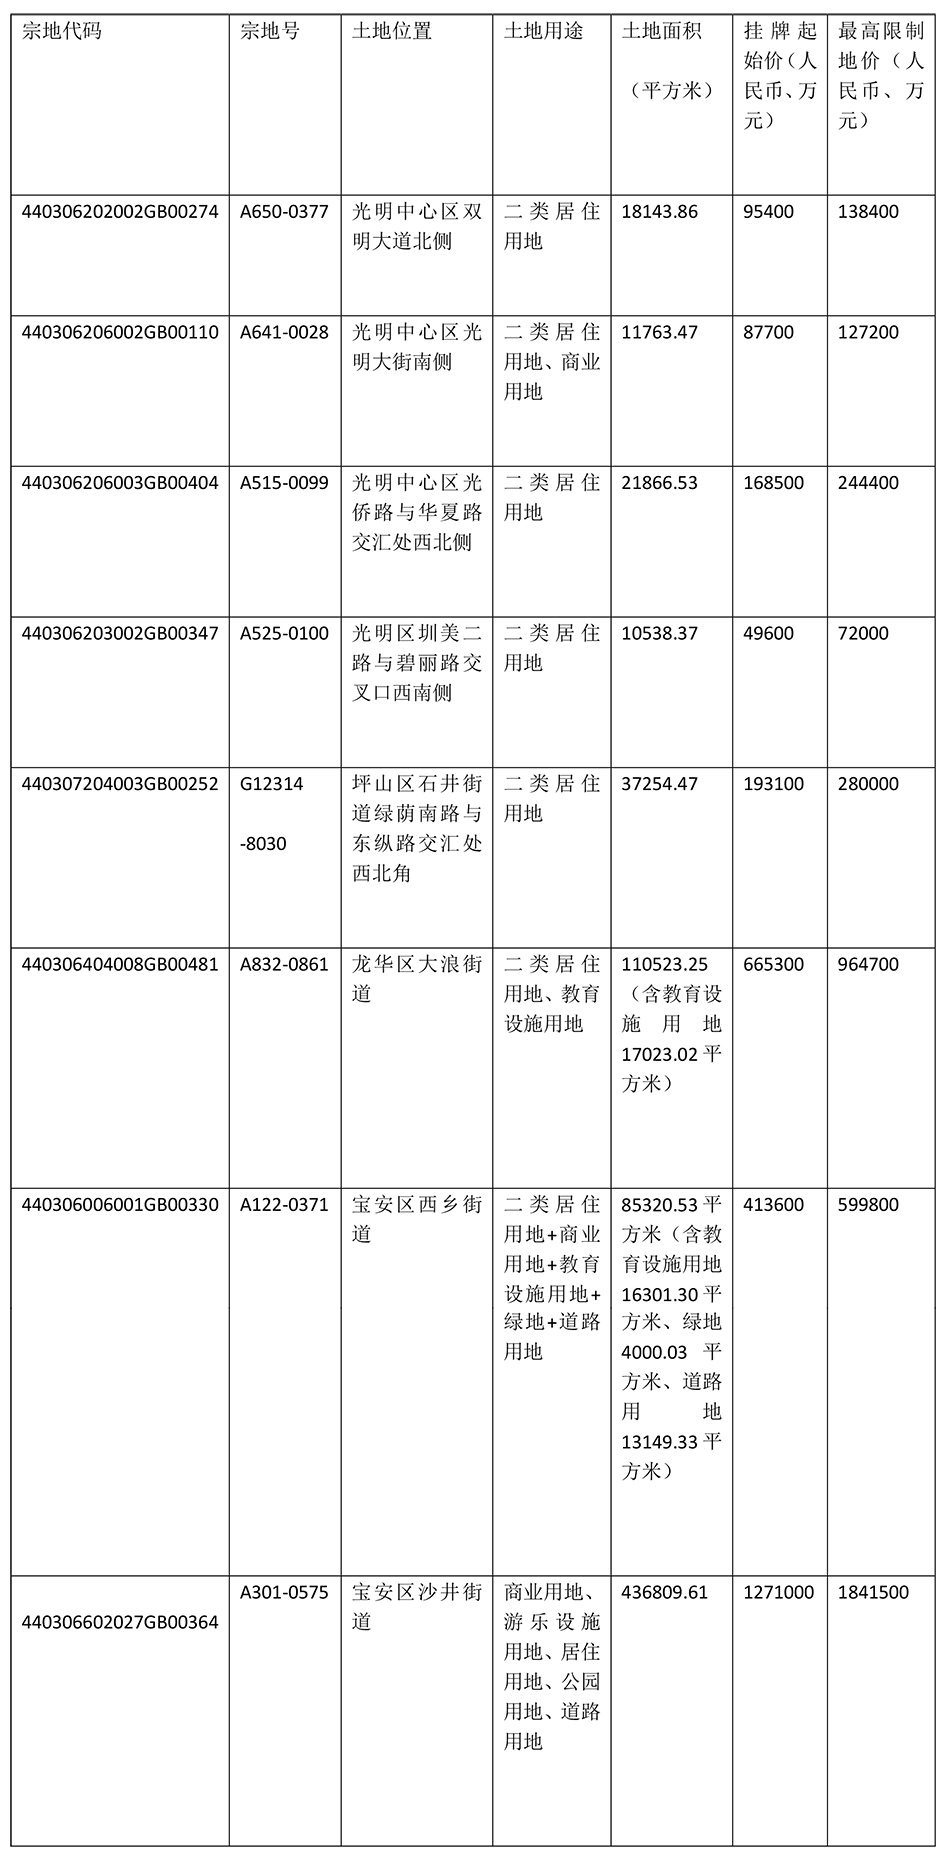 深圳集中挂牌出让8宗居住用地 起始总价294.42亿元